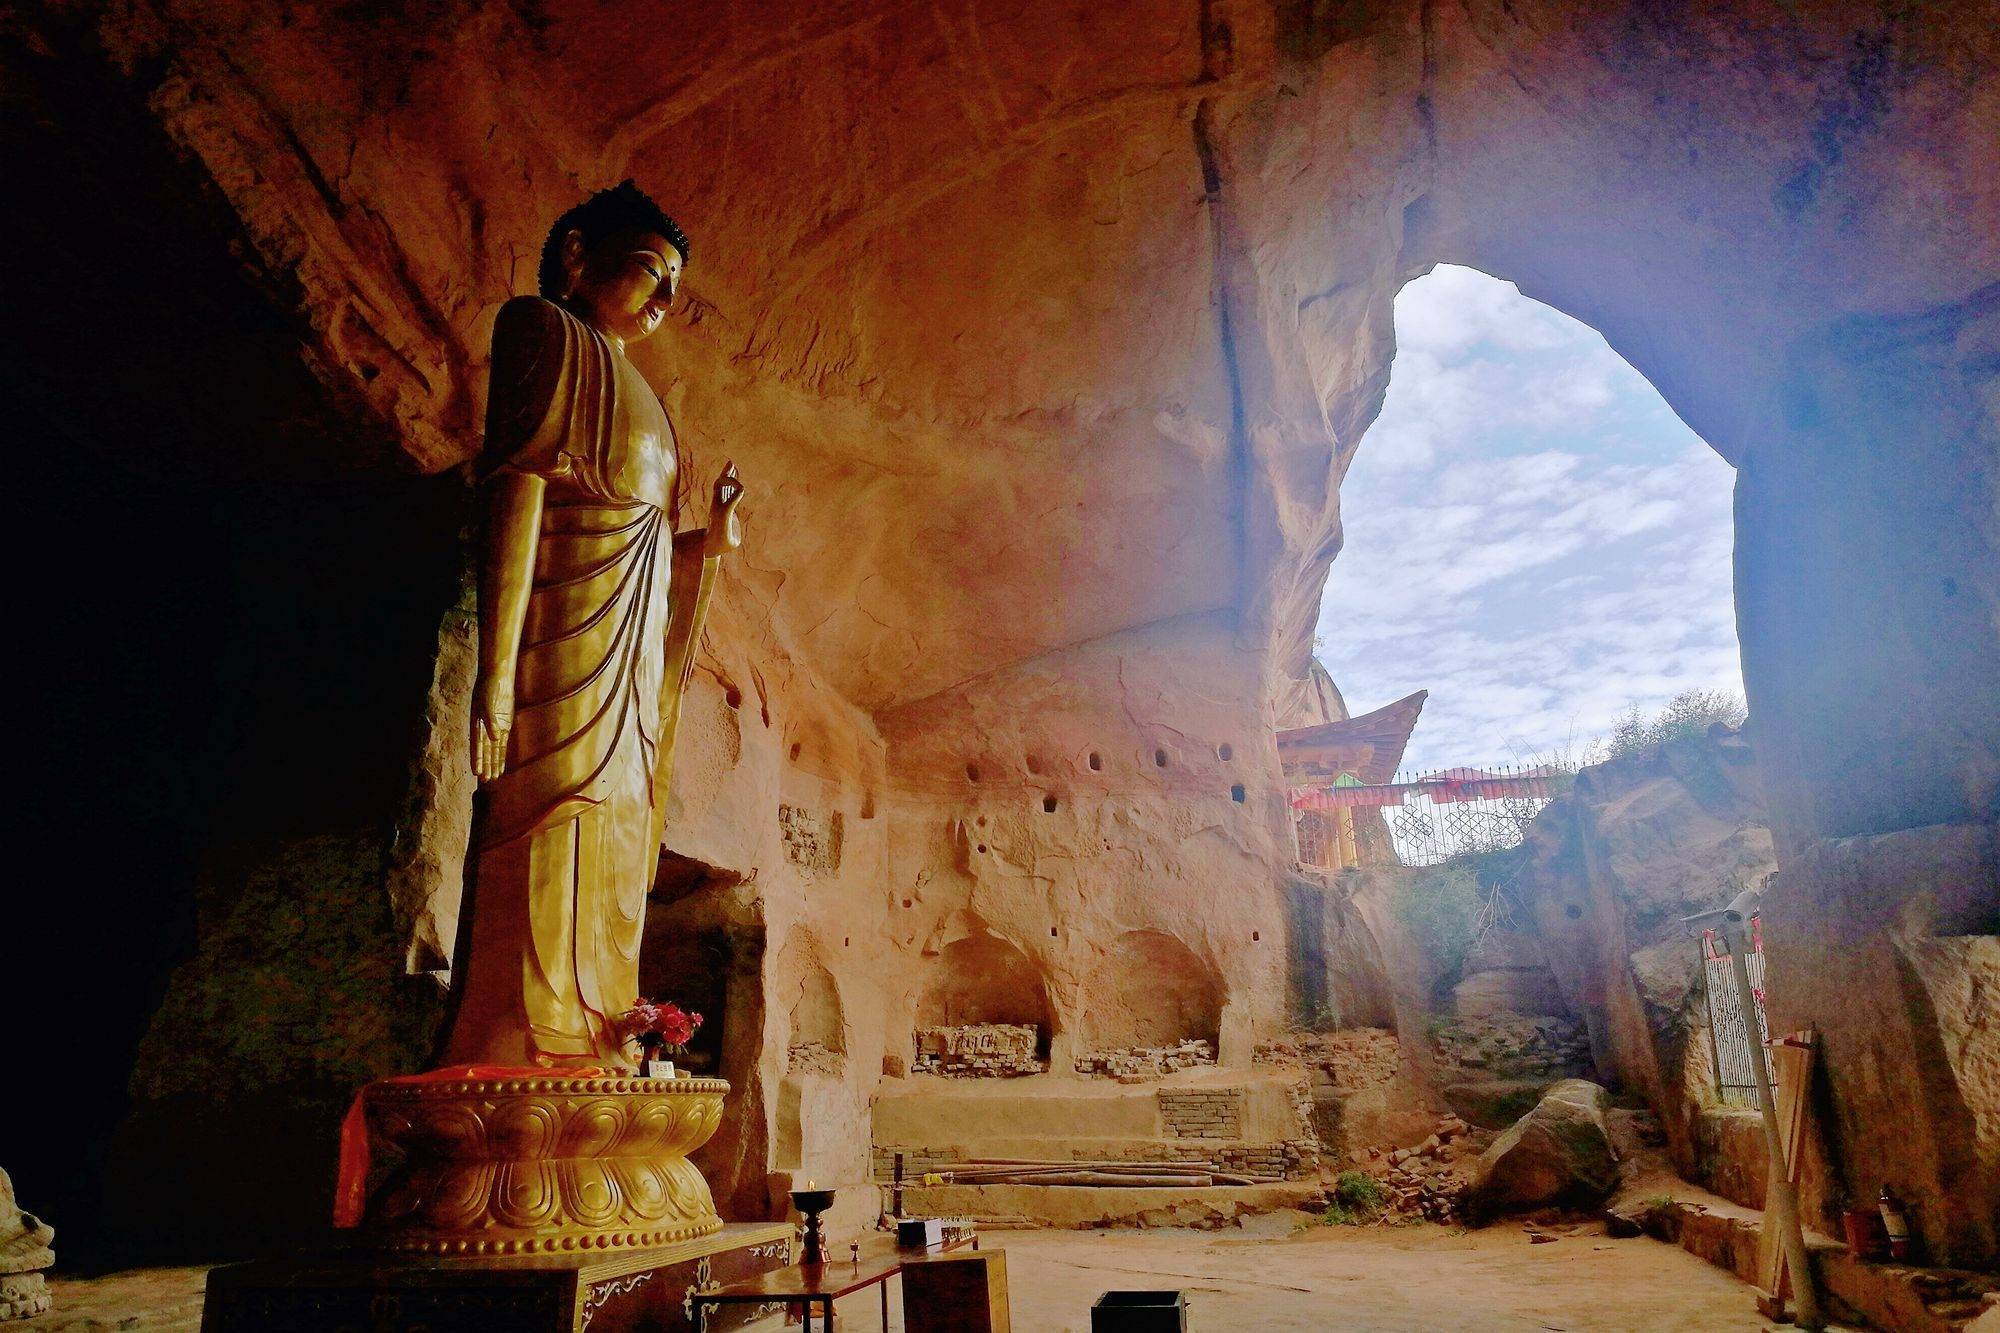 甘肃张掖马蹄寺,有一座悬崖之上的三十三天石窟,规模全国罕见